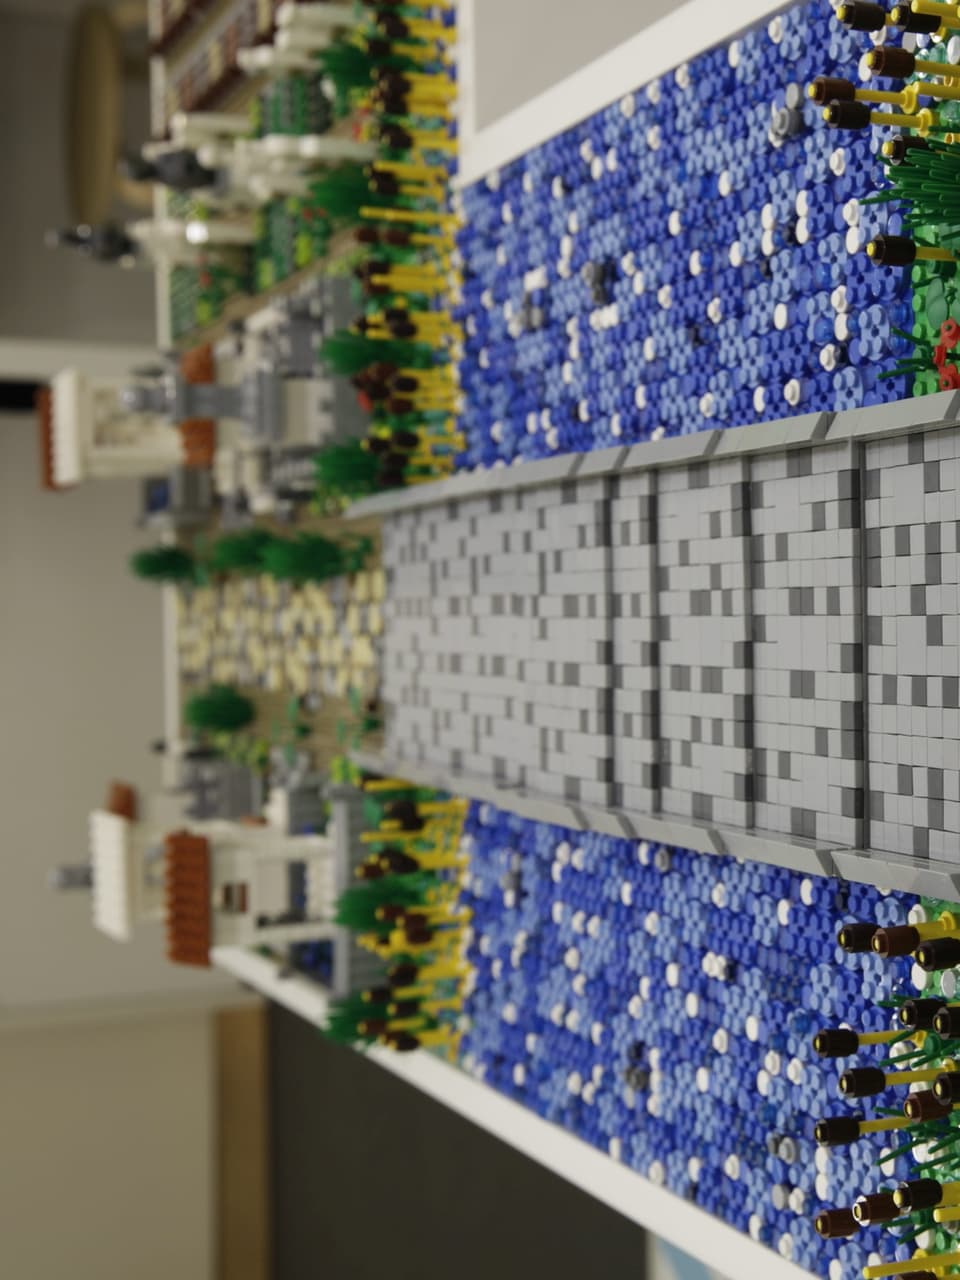 Brücke aus Legosteinen.